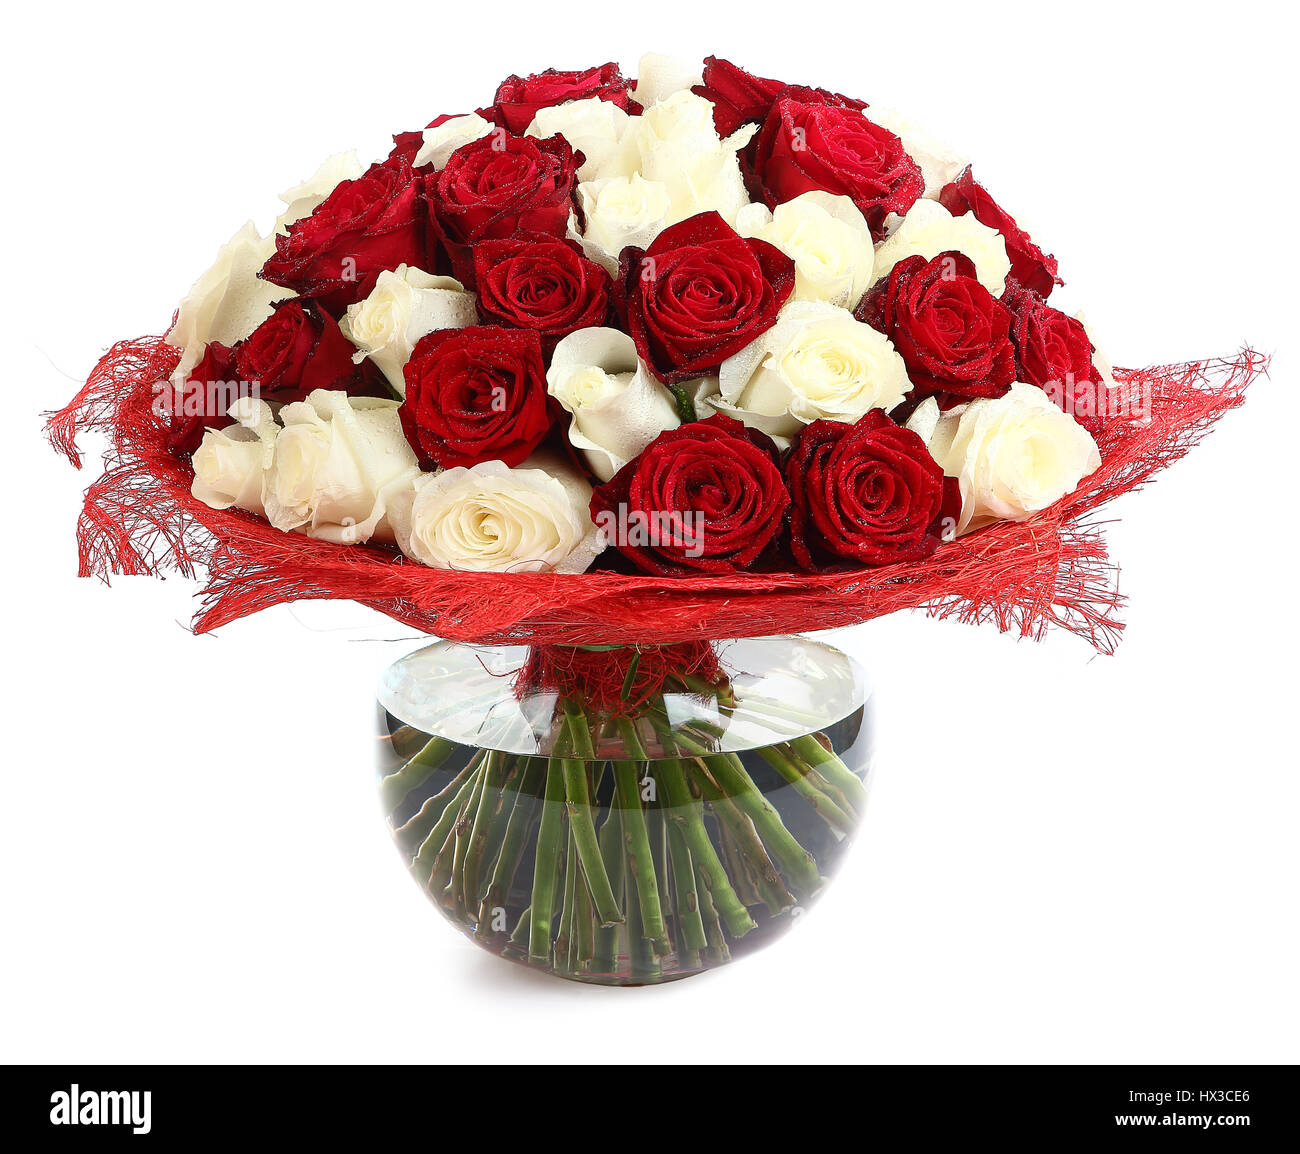 Arrangement de floristique roses blanches et rouges. La composition florale  de roses rouges et blanches. Le caractère isolé de l'image sur un fond  blanc. Roses dans un verre V Photo Stock -